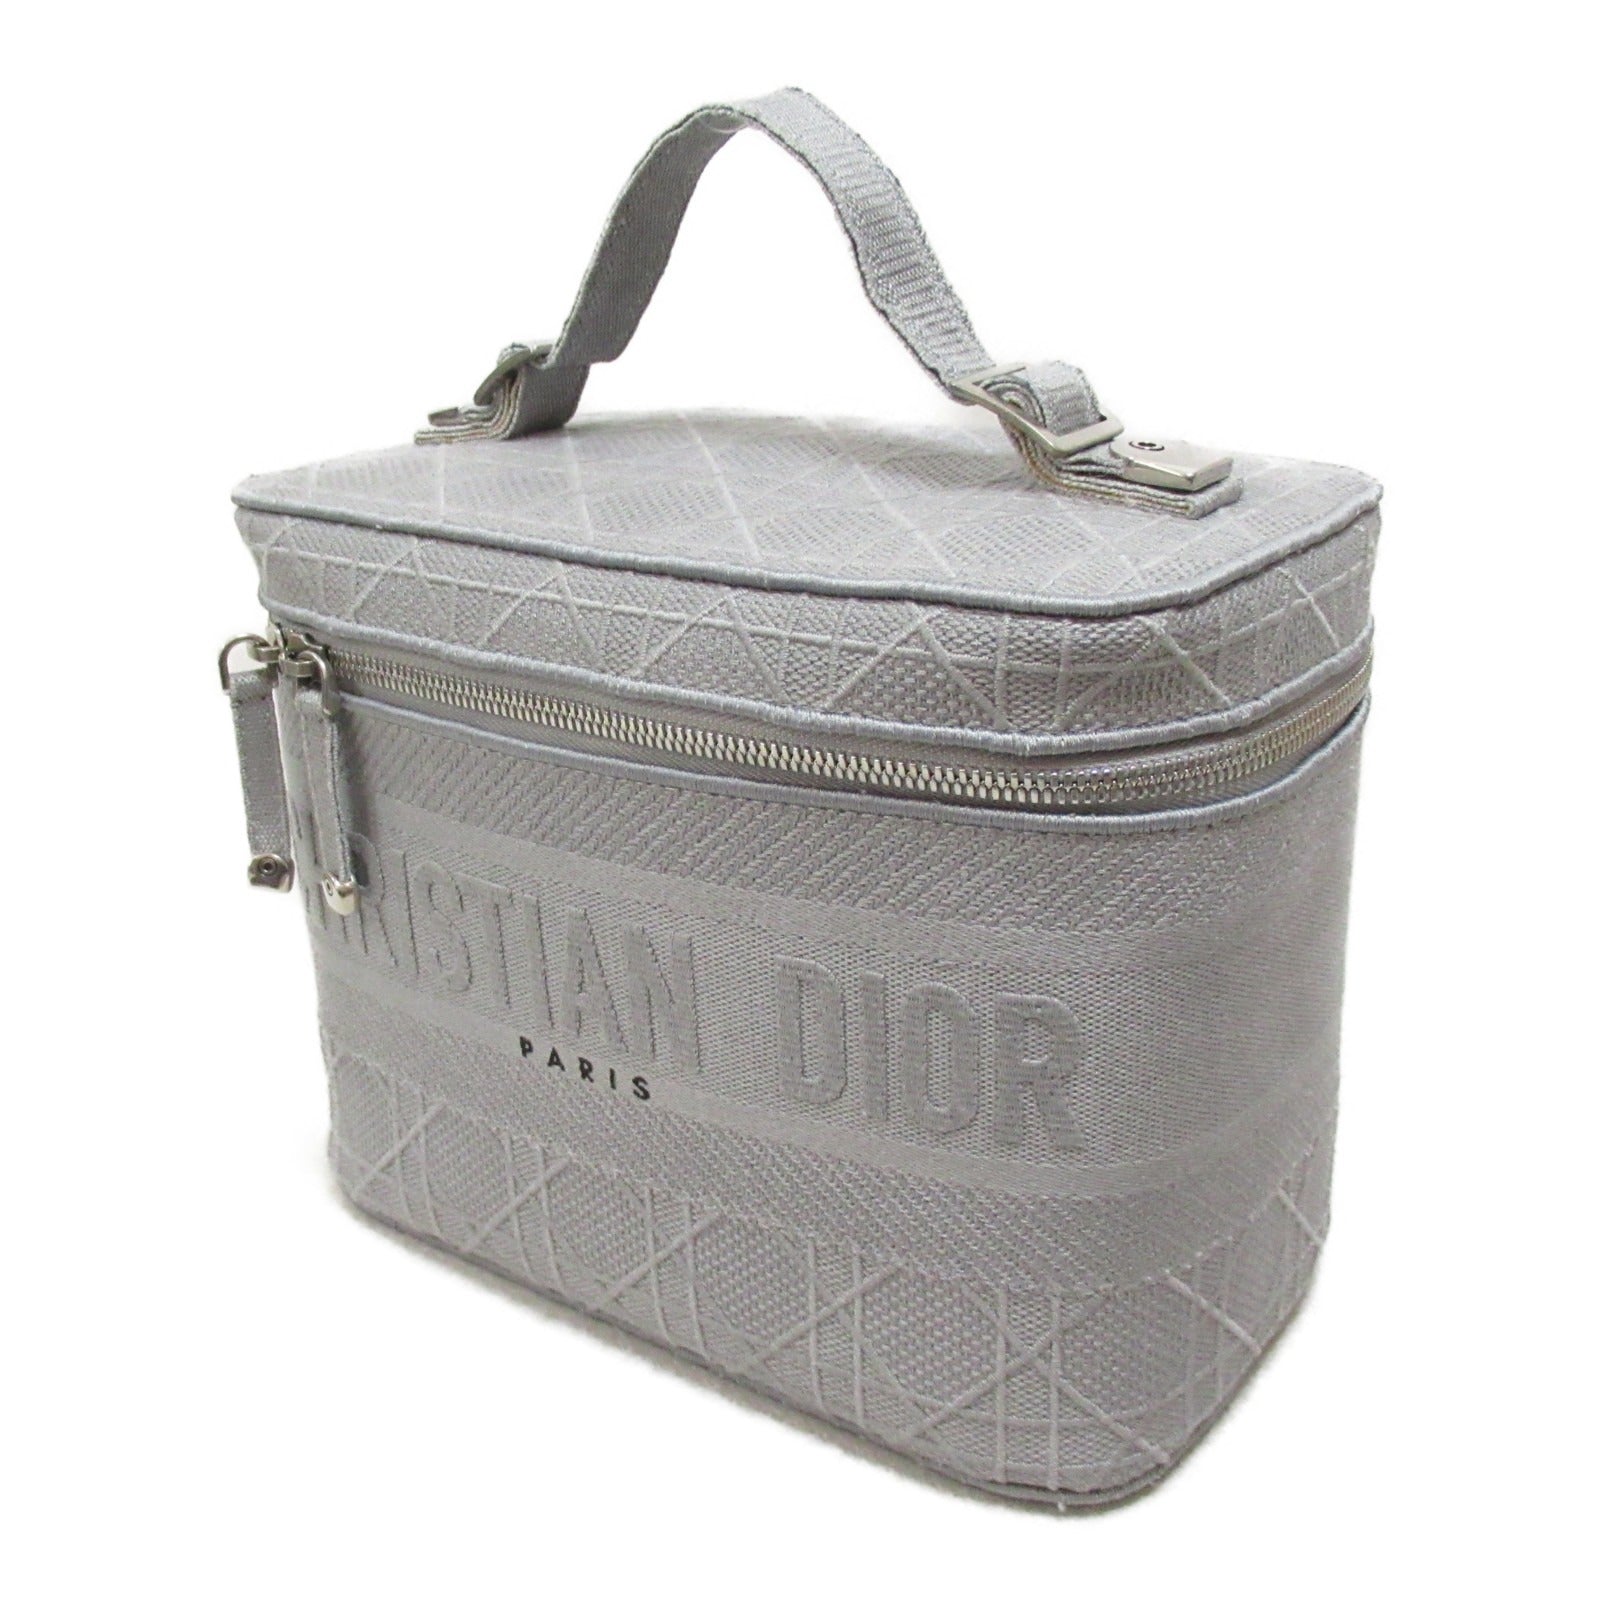 Dior Dior Handbag Handbag Handbag Handbags Handbags Handbags Handbags Handbags Handbags Handbags Handbags Handbags Handbags